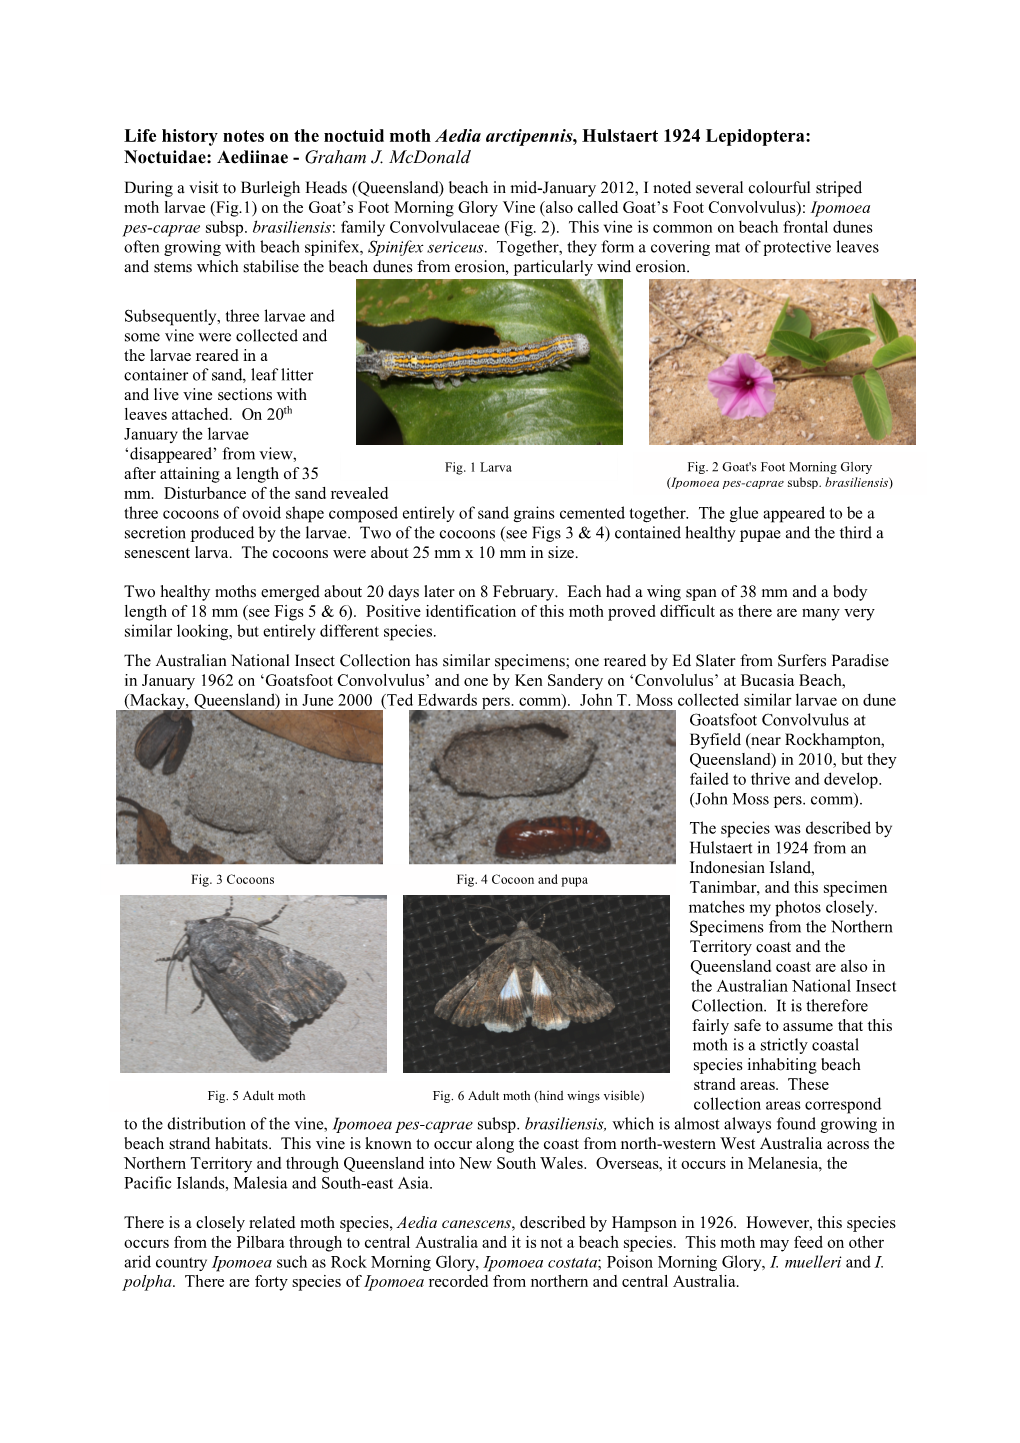 Life History Notes on the Noctuid Moth Aedia Arctipennis, Hulstaert 1924 Lepidoptera: Noctuidae: Aediinae - Graham J